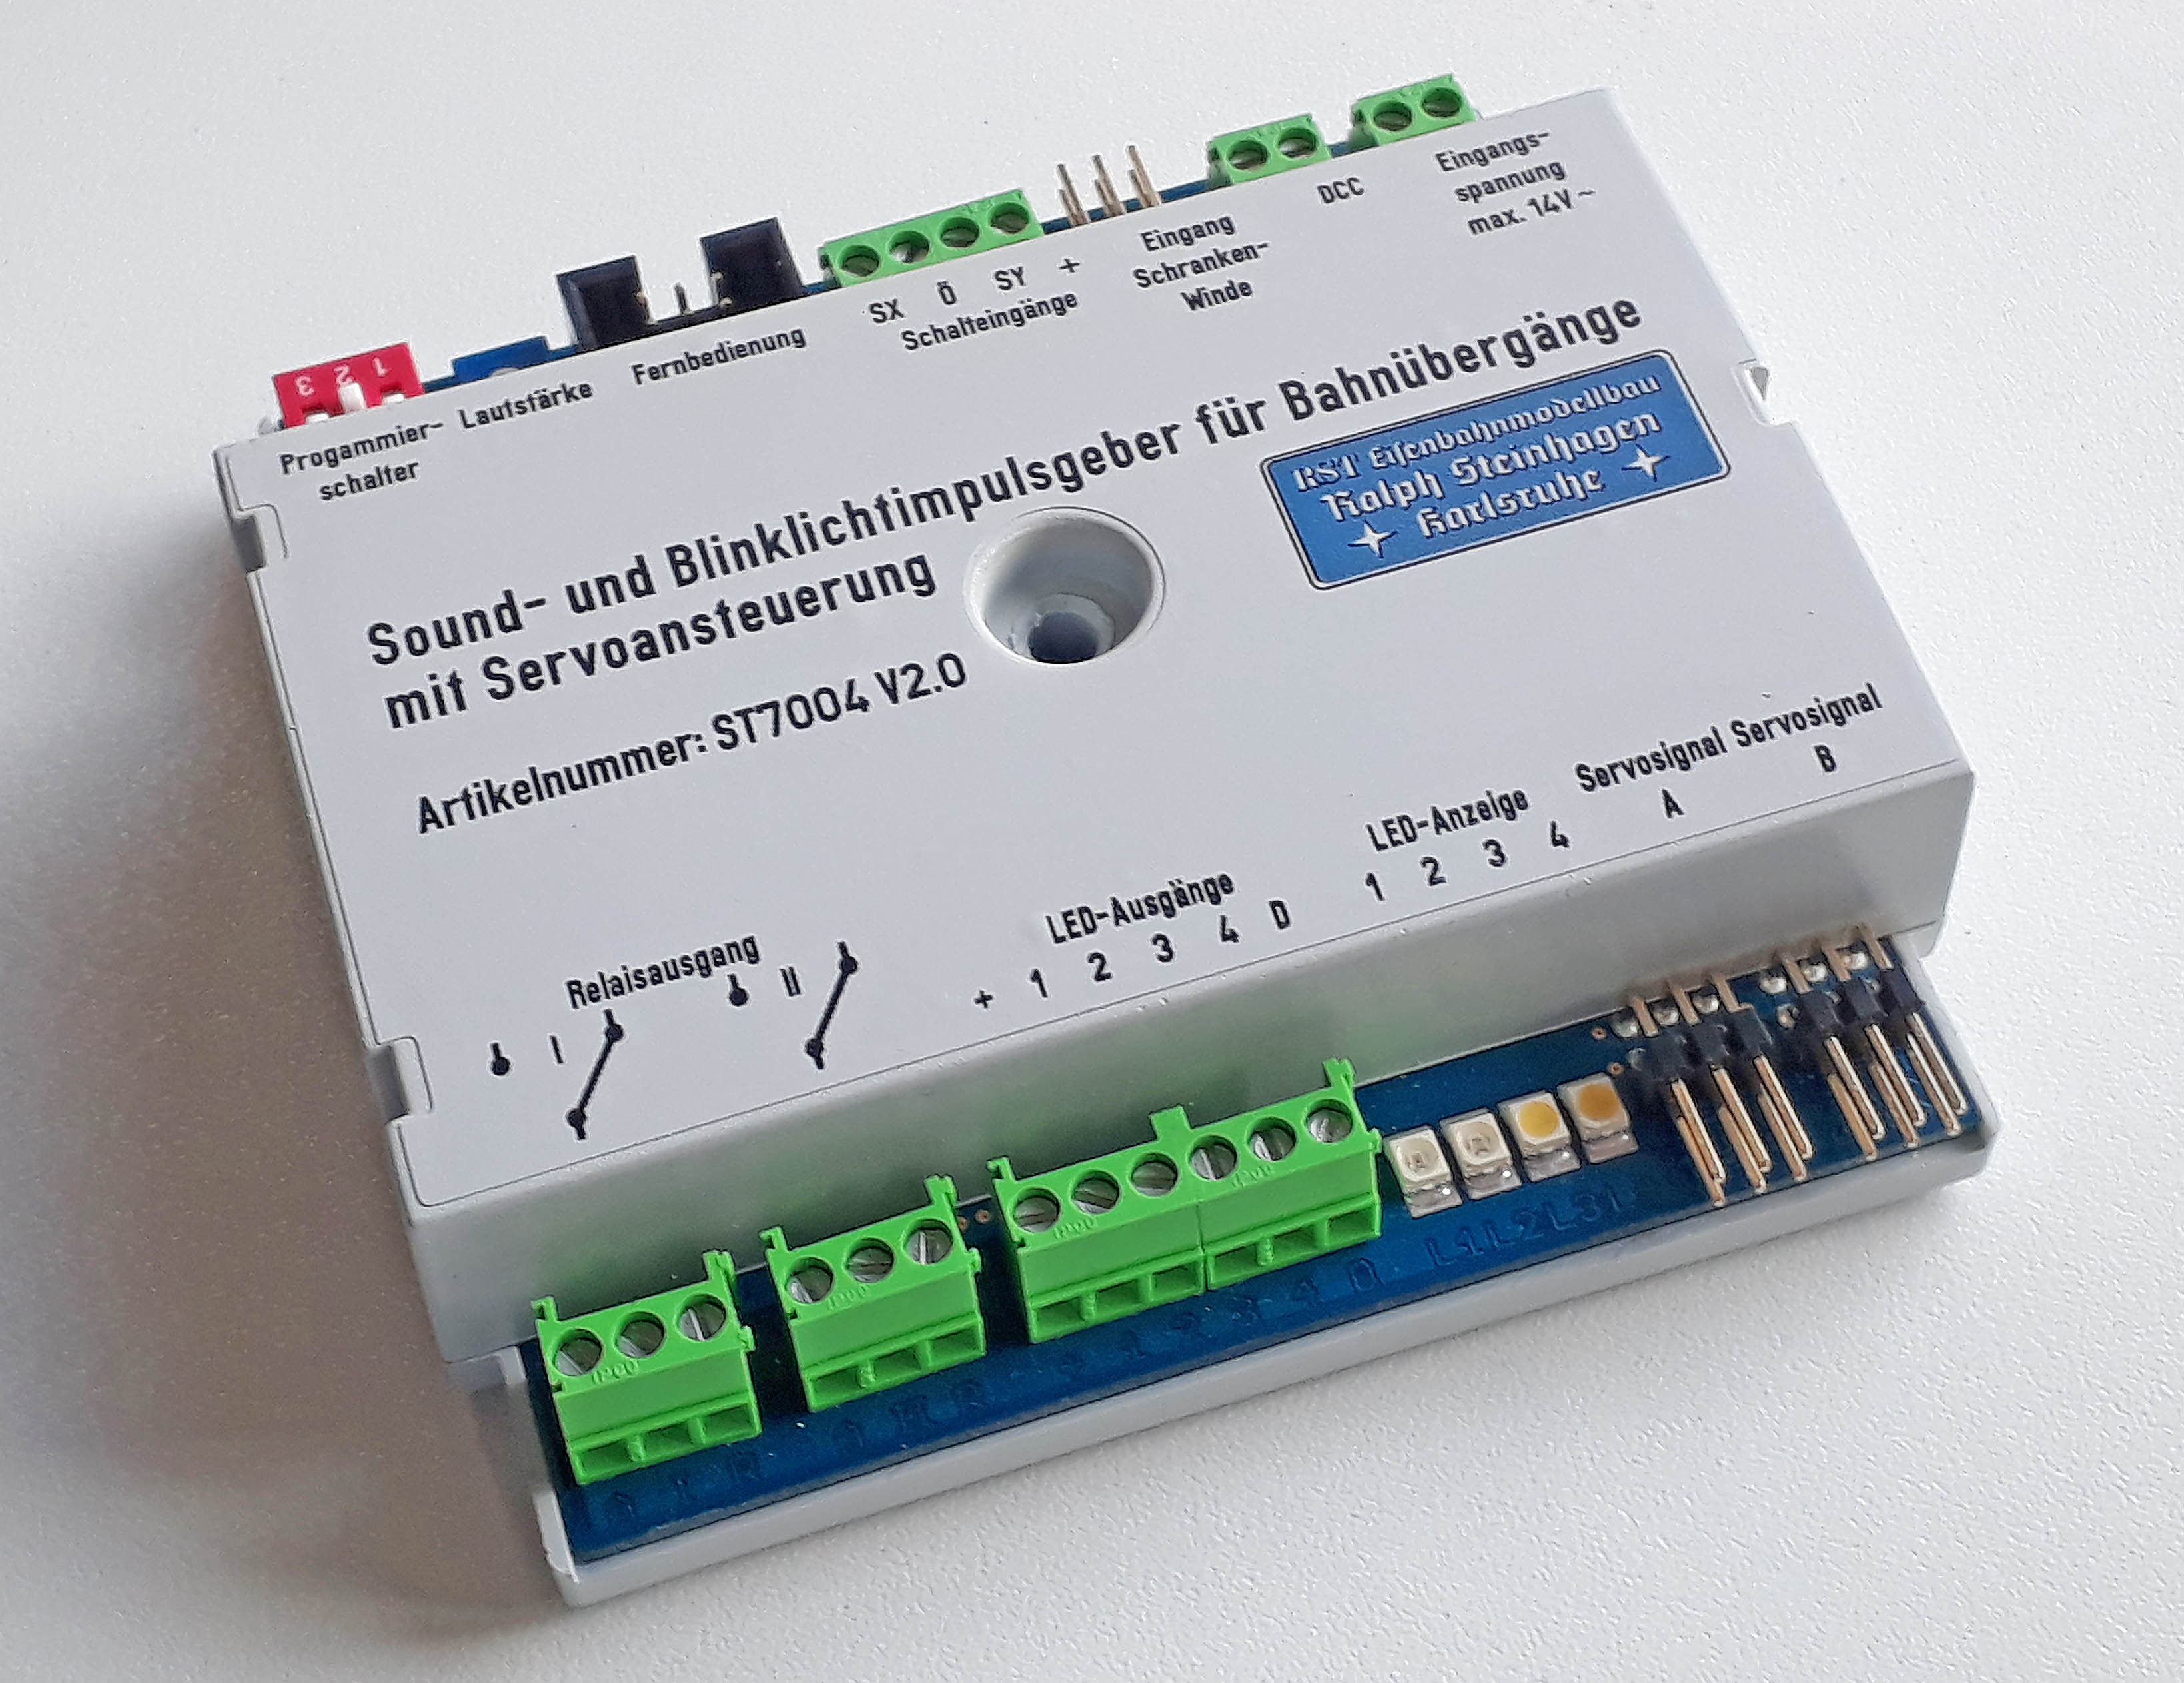 Sound- und Blinklichtimpulsgeber für Bahnübergänge mit Servoansteuerung - V2.0